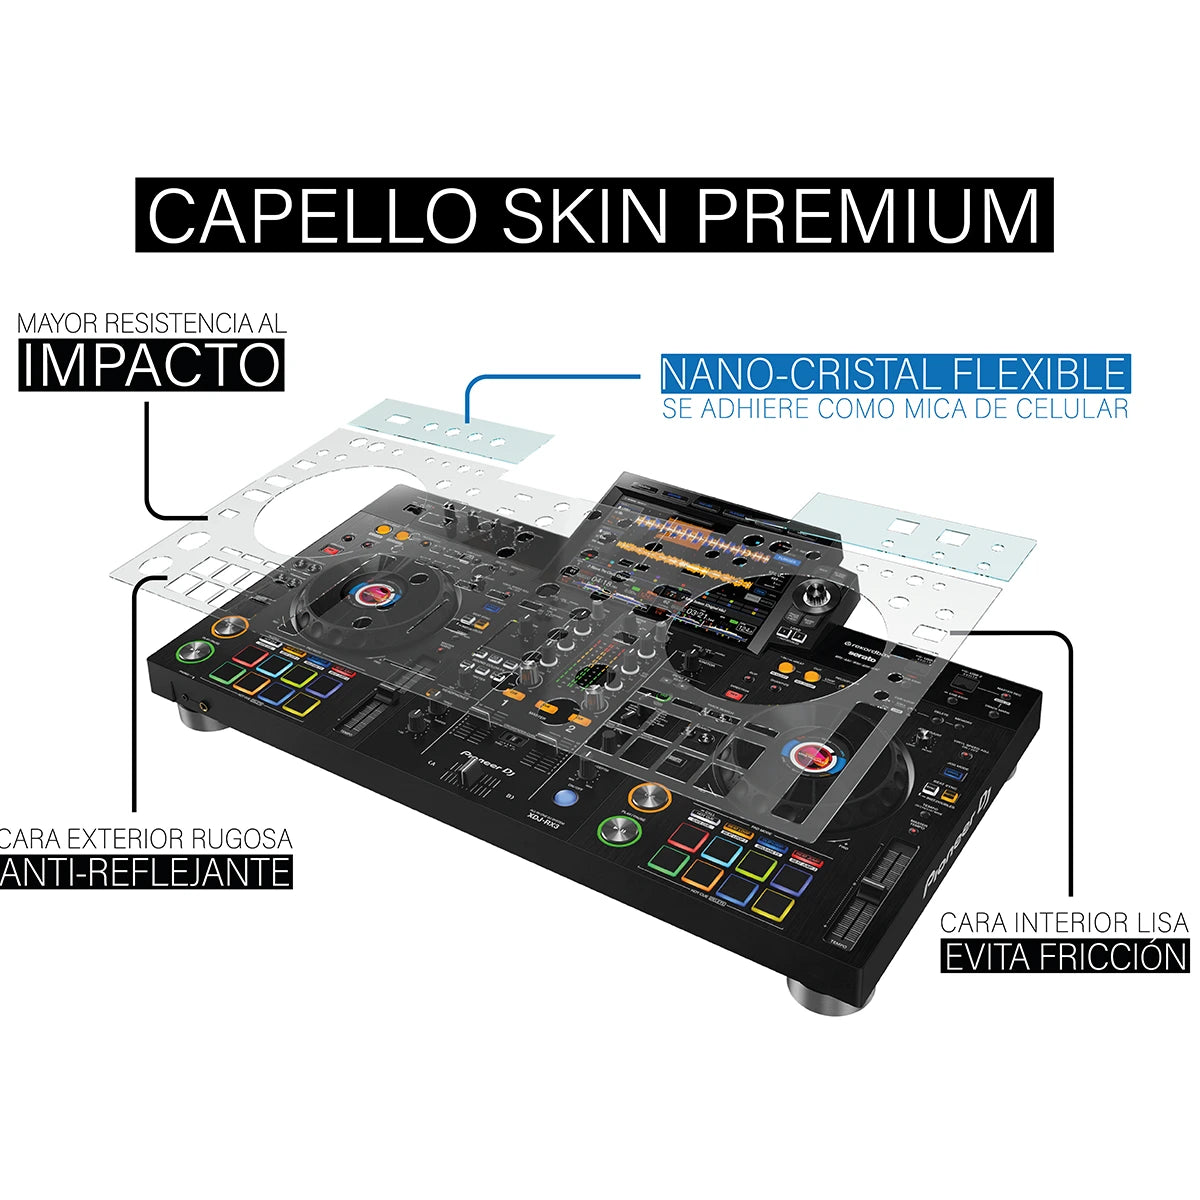 Lamina protectora para Pioneer XDJ-RX3 | Capello Skin Premiun DEP